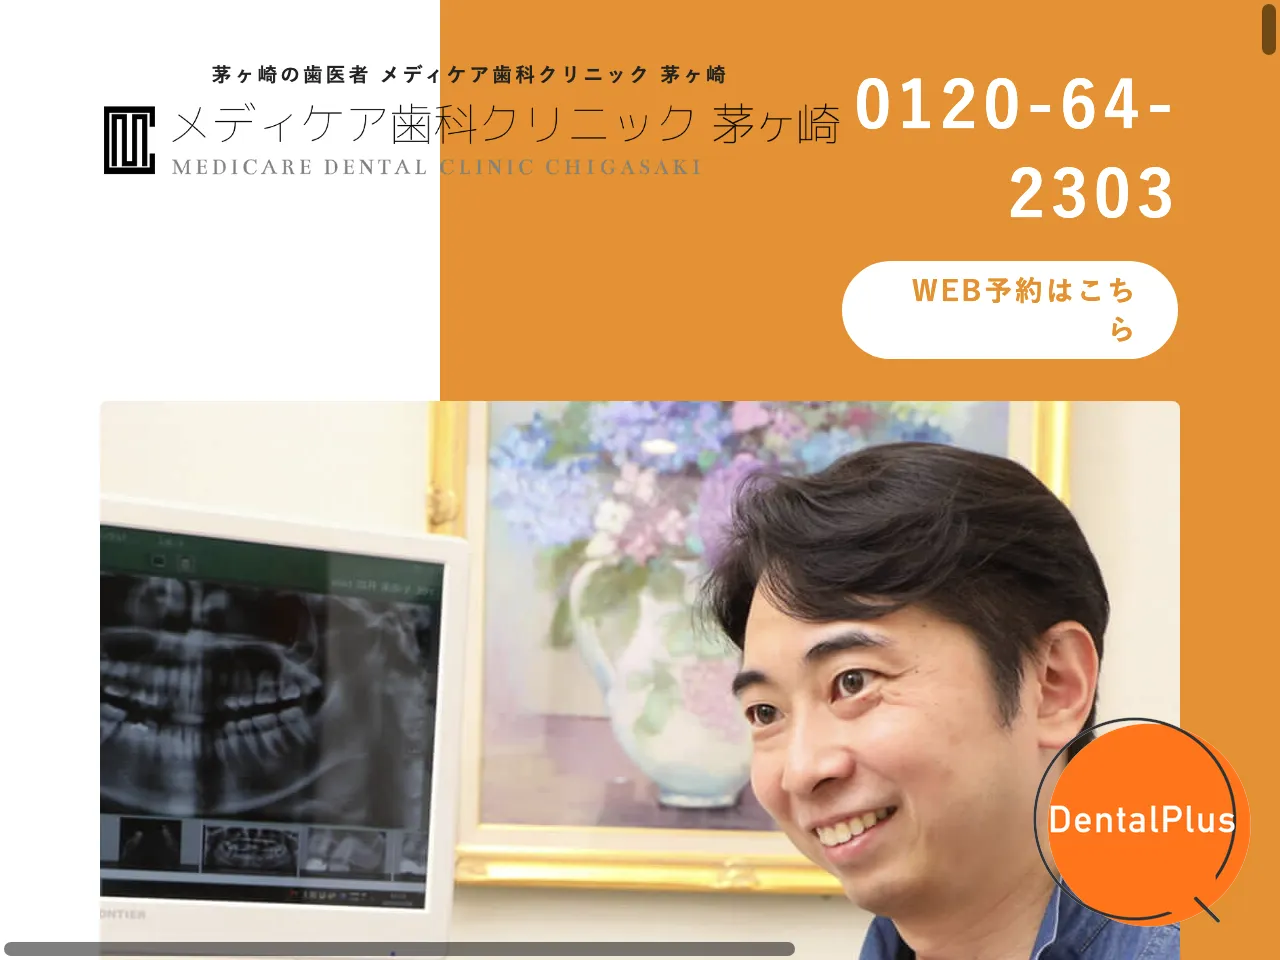 メディケア歯科クリニック 茅ヶ崎のウェブサイト